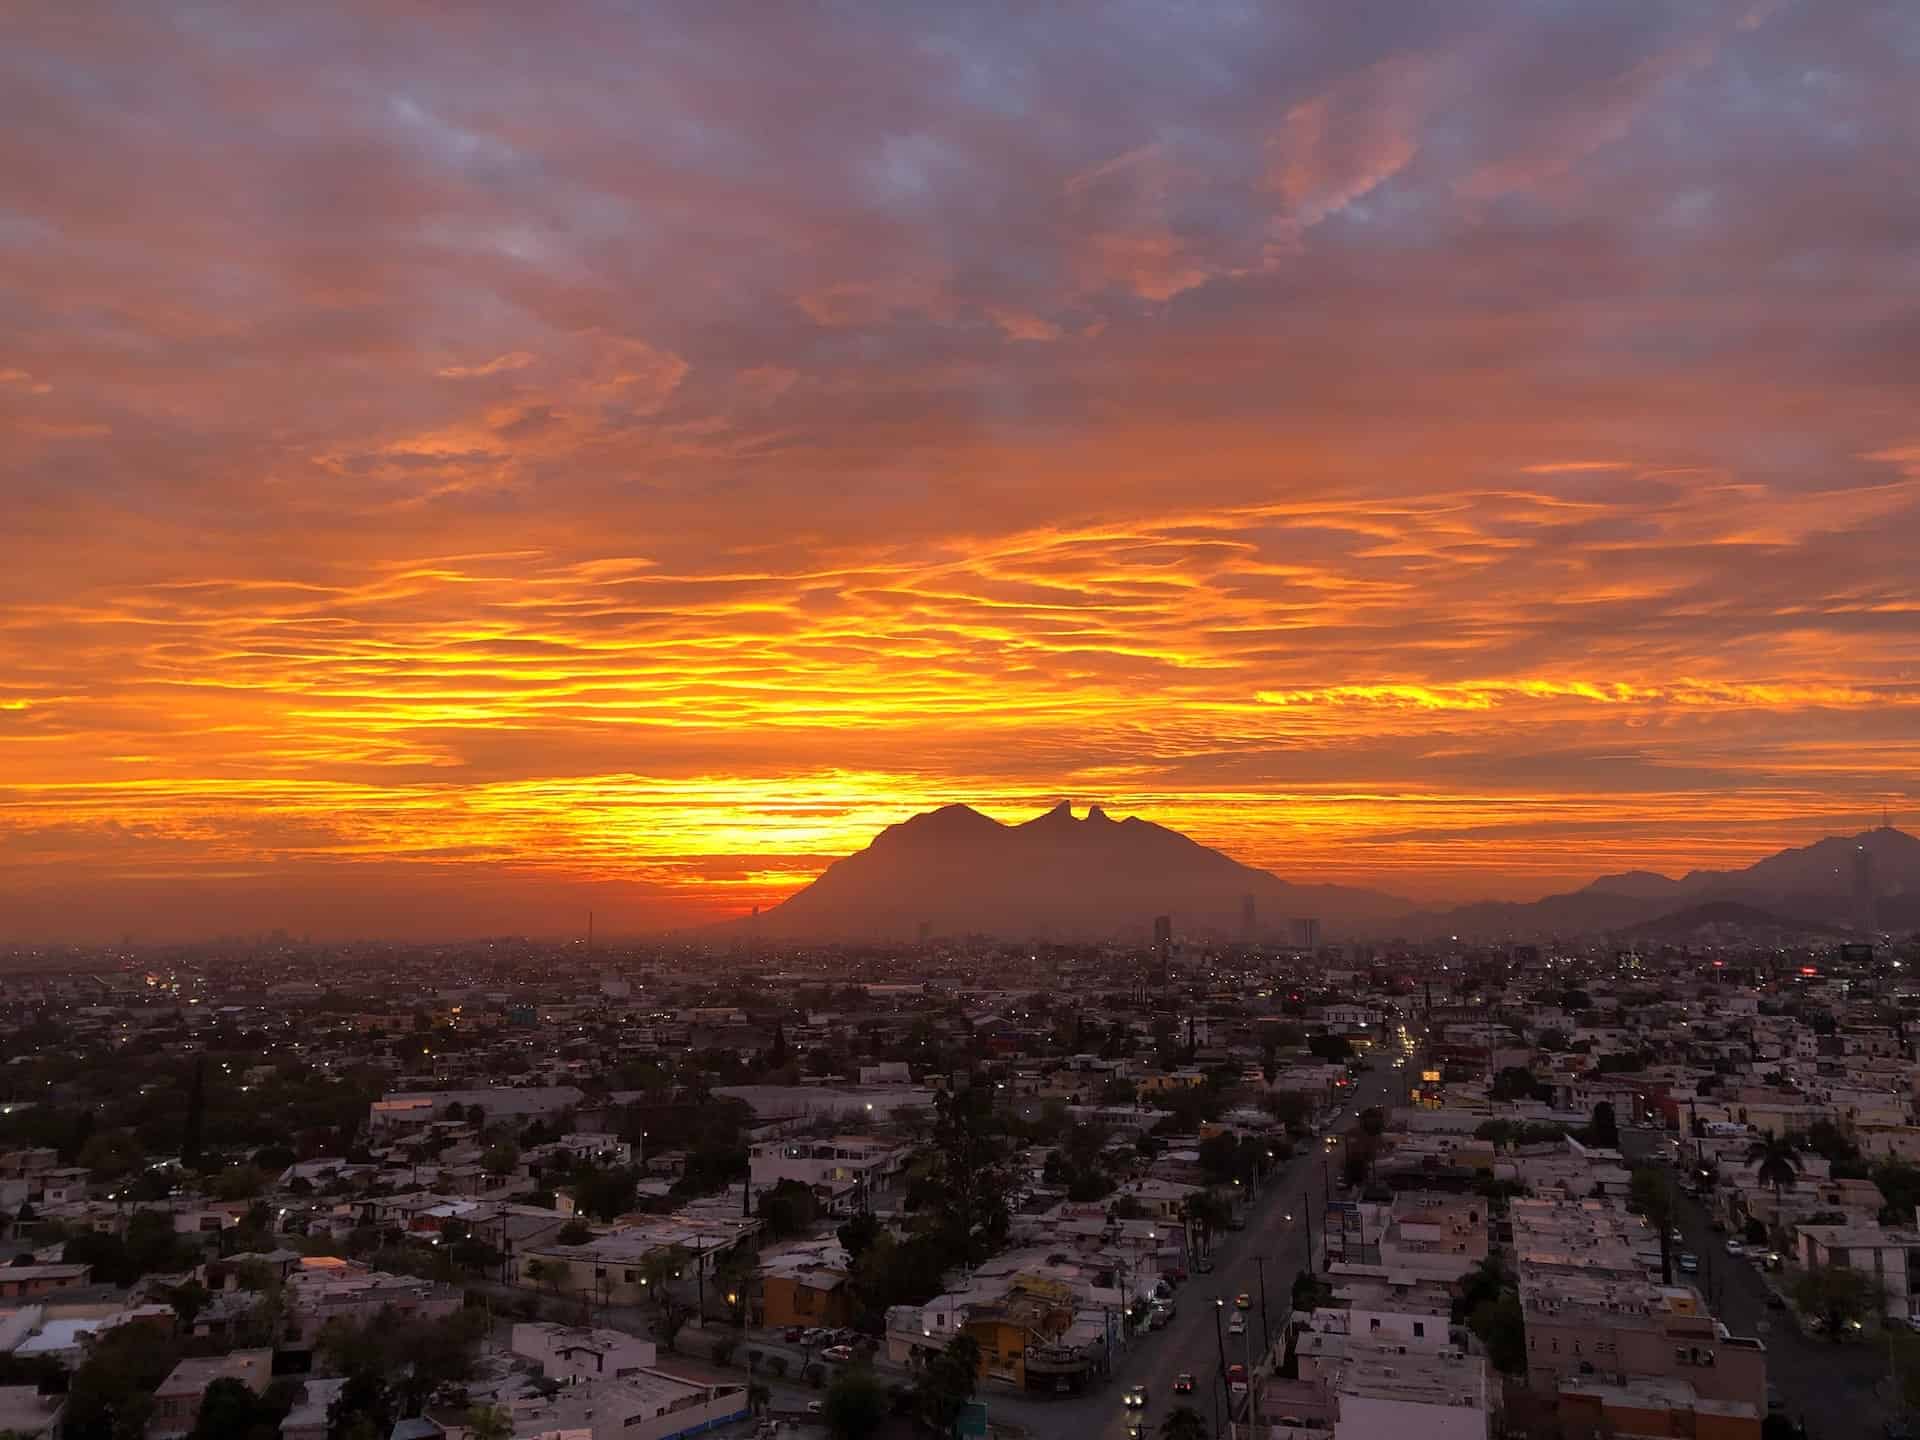 Best things to do in Monterrey Mexico - Esteban Gutierrez - Cerro de La Silla by Jorge Gardner on Unsplash